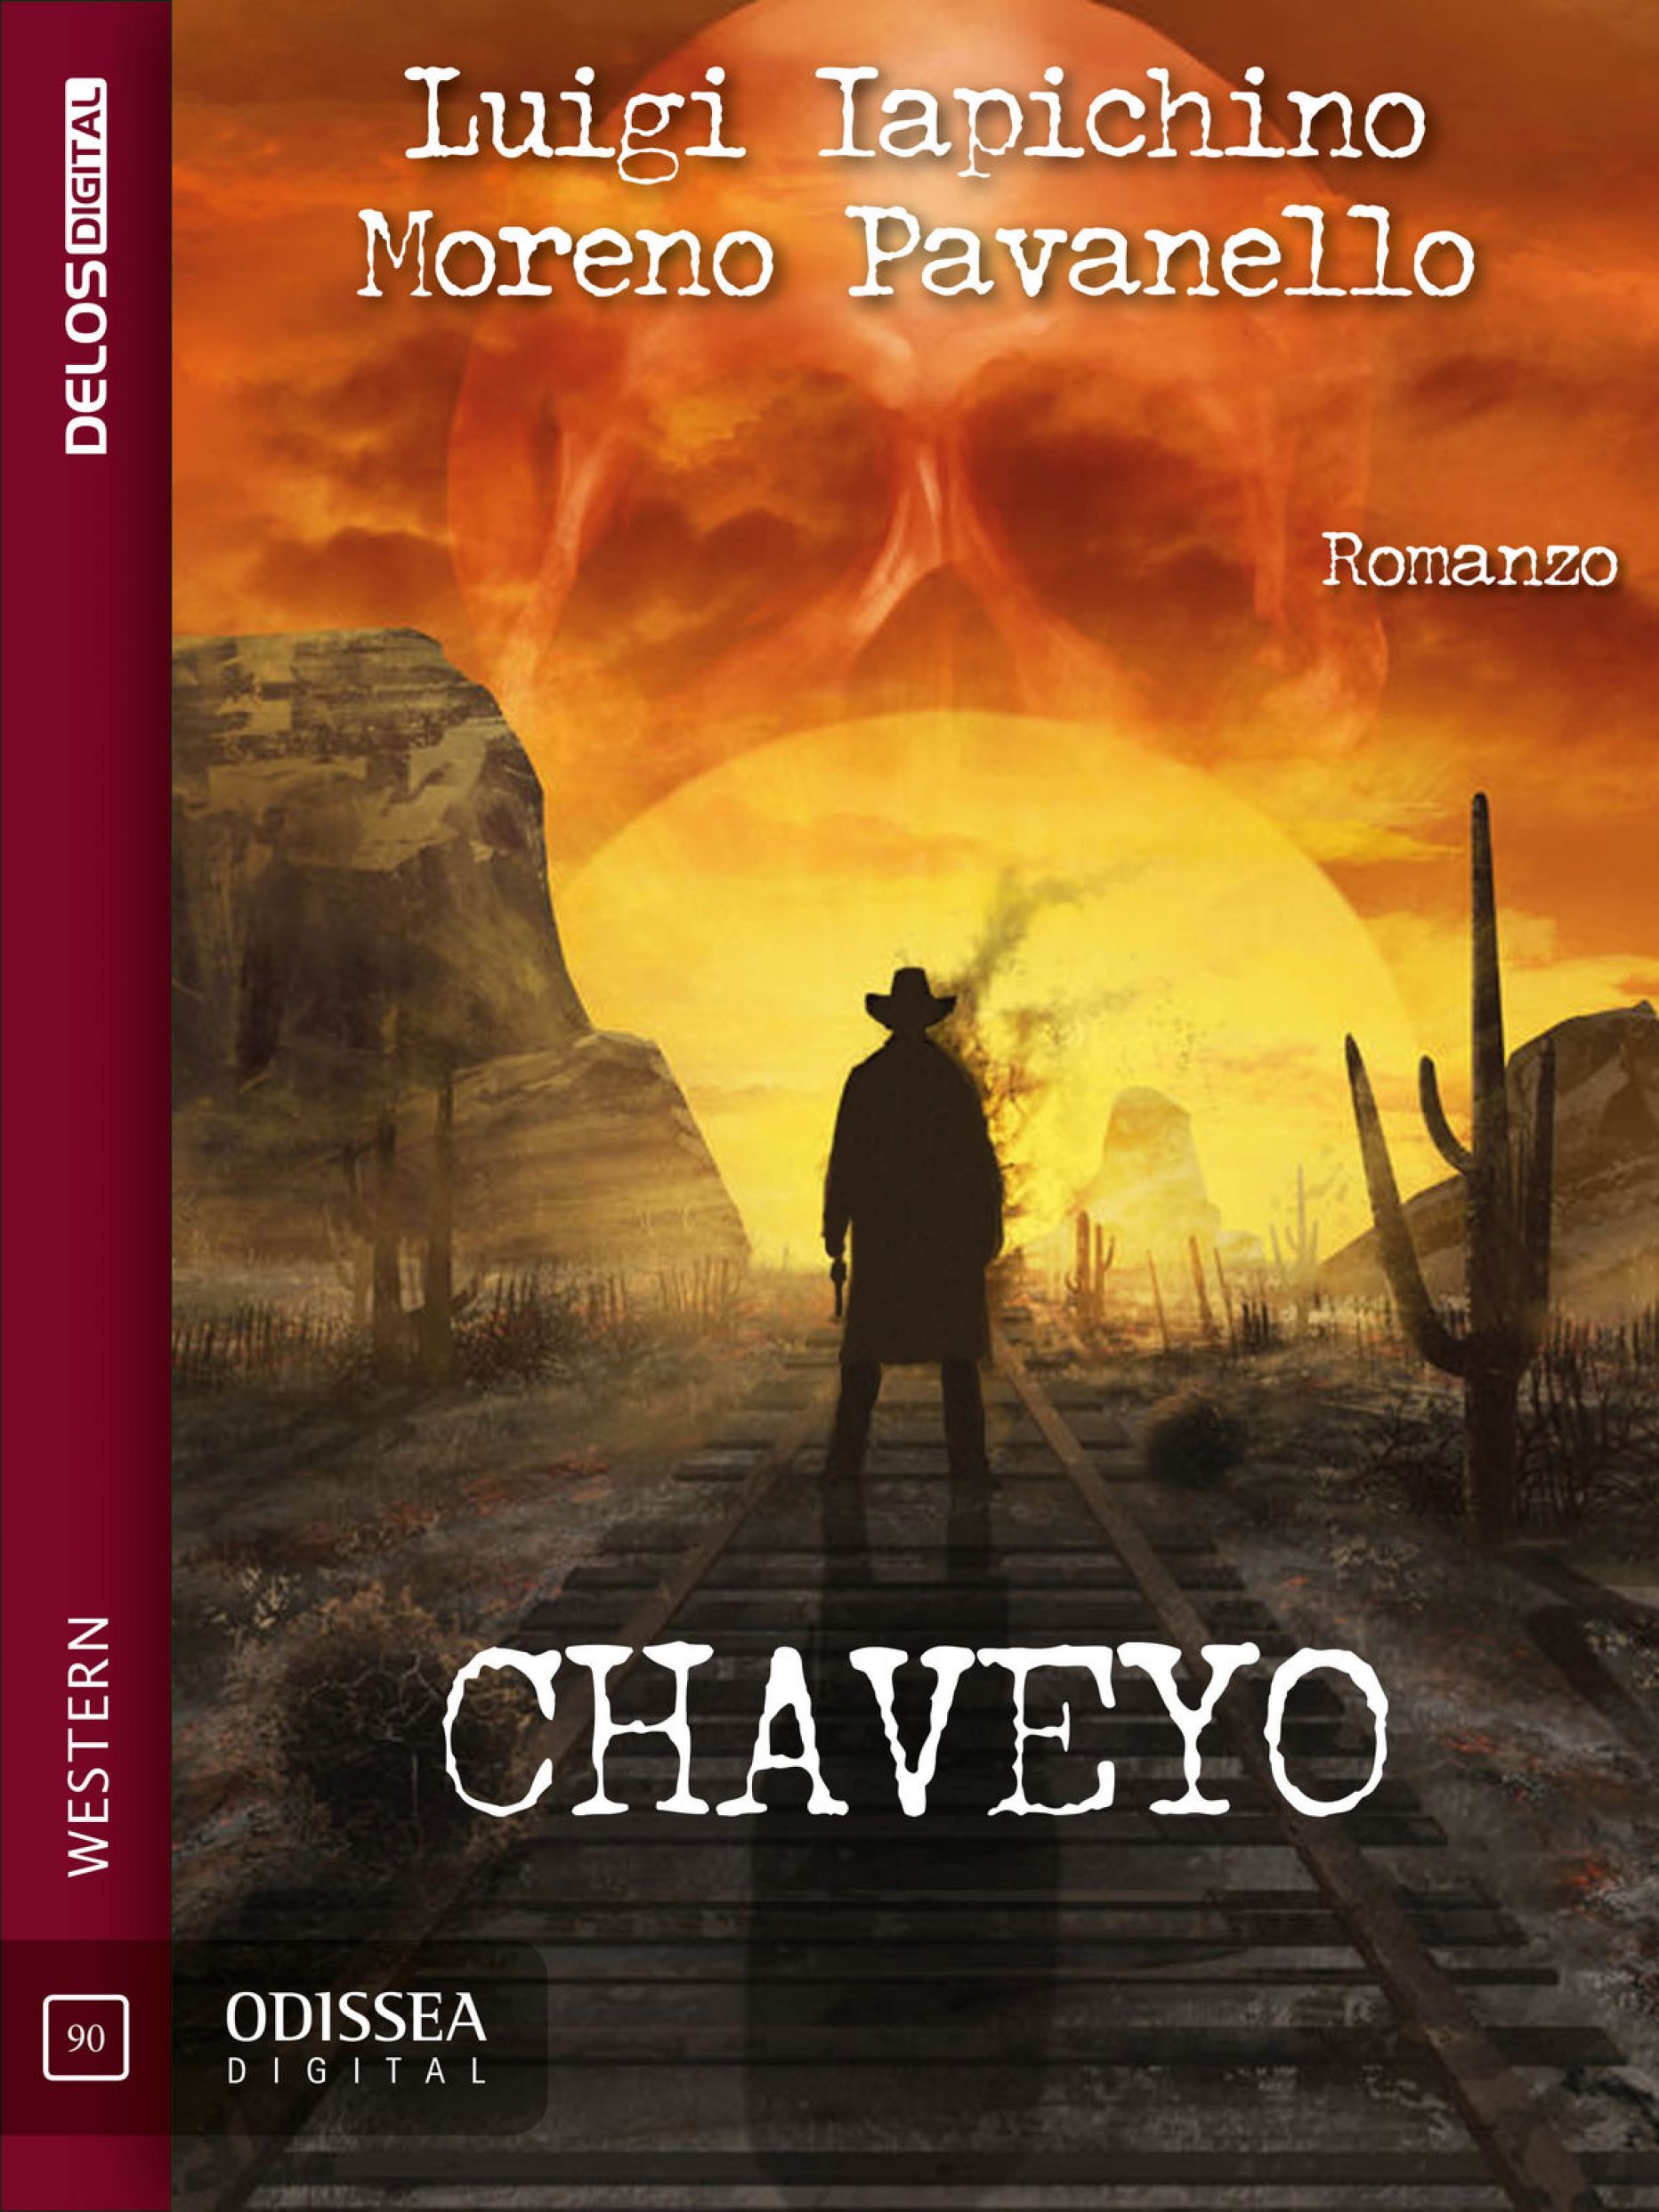 Chaveyo – di Luigi Iapichino e Moreno Pavanello